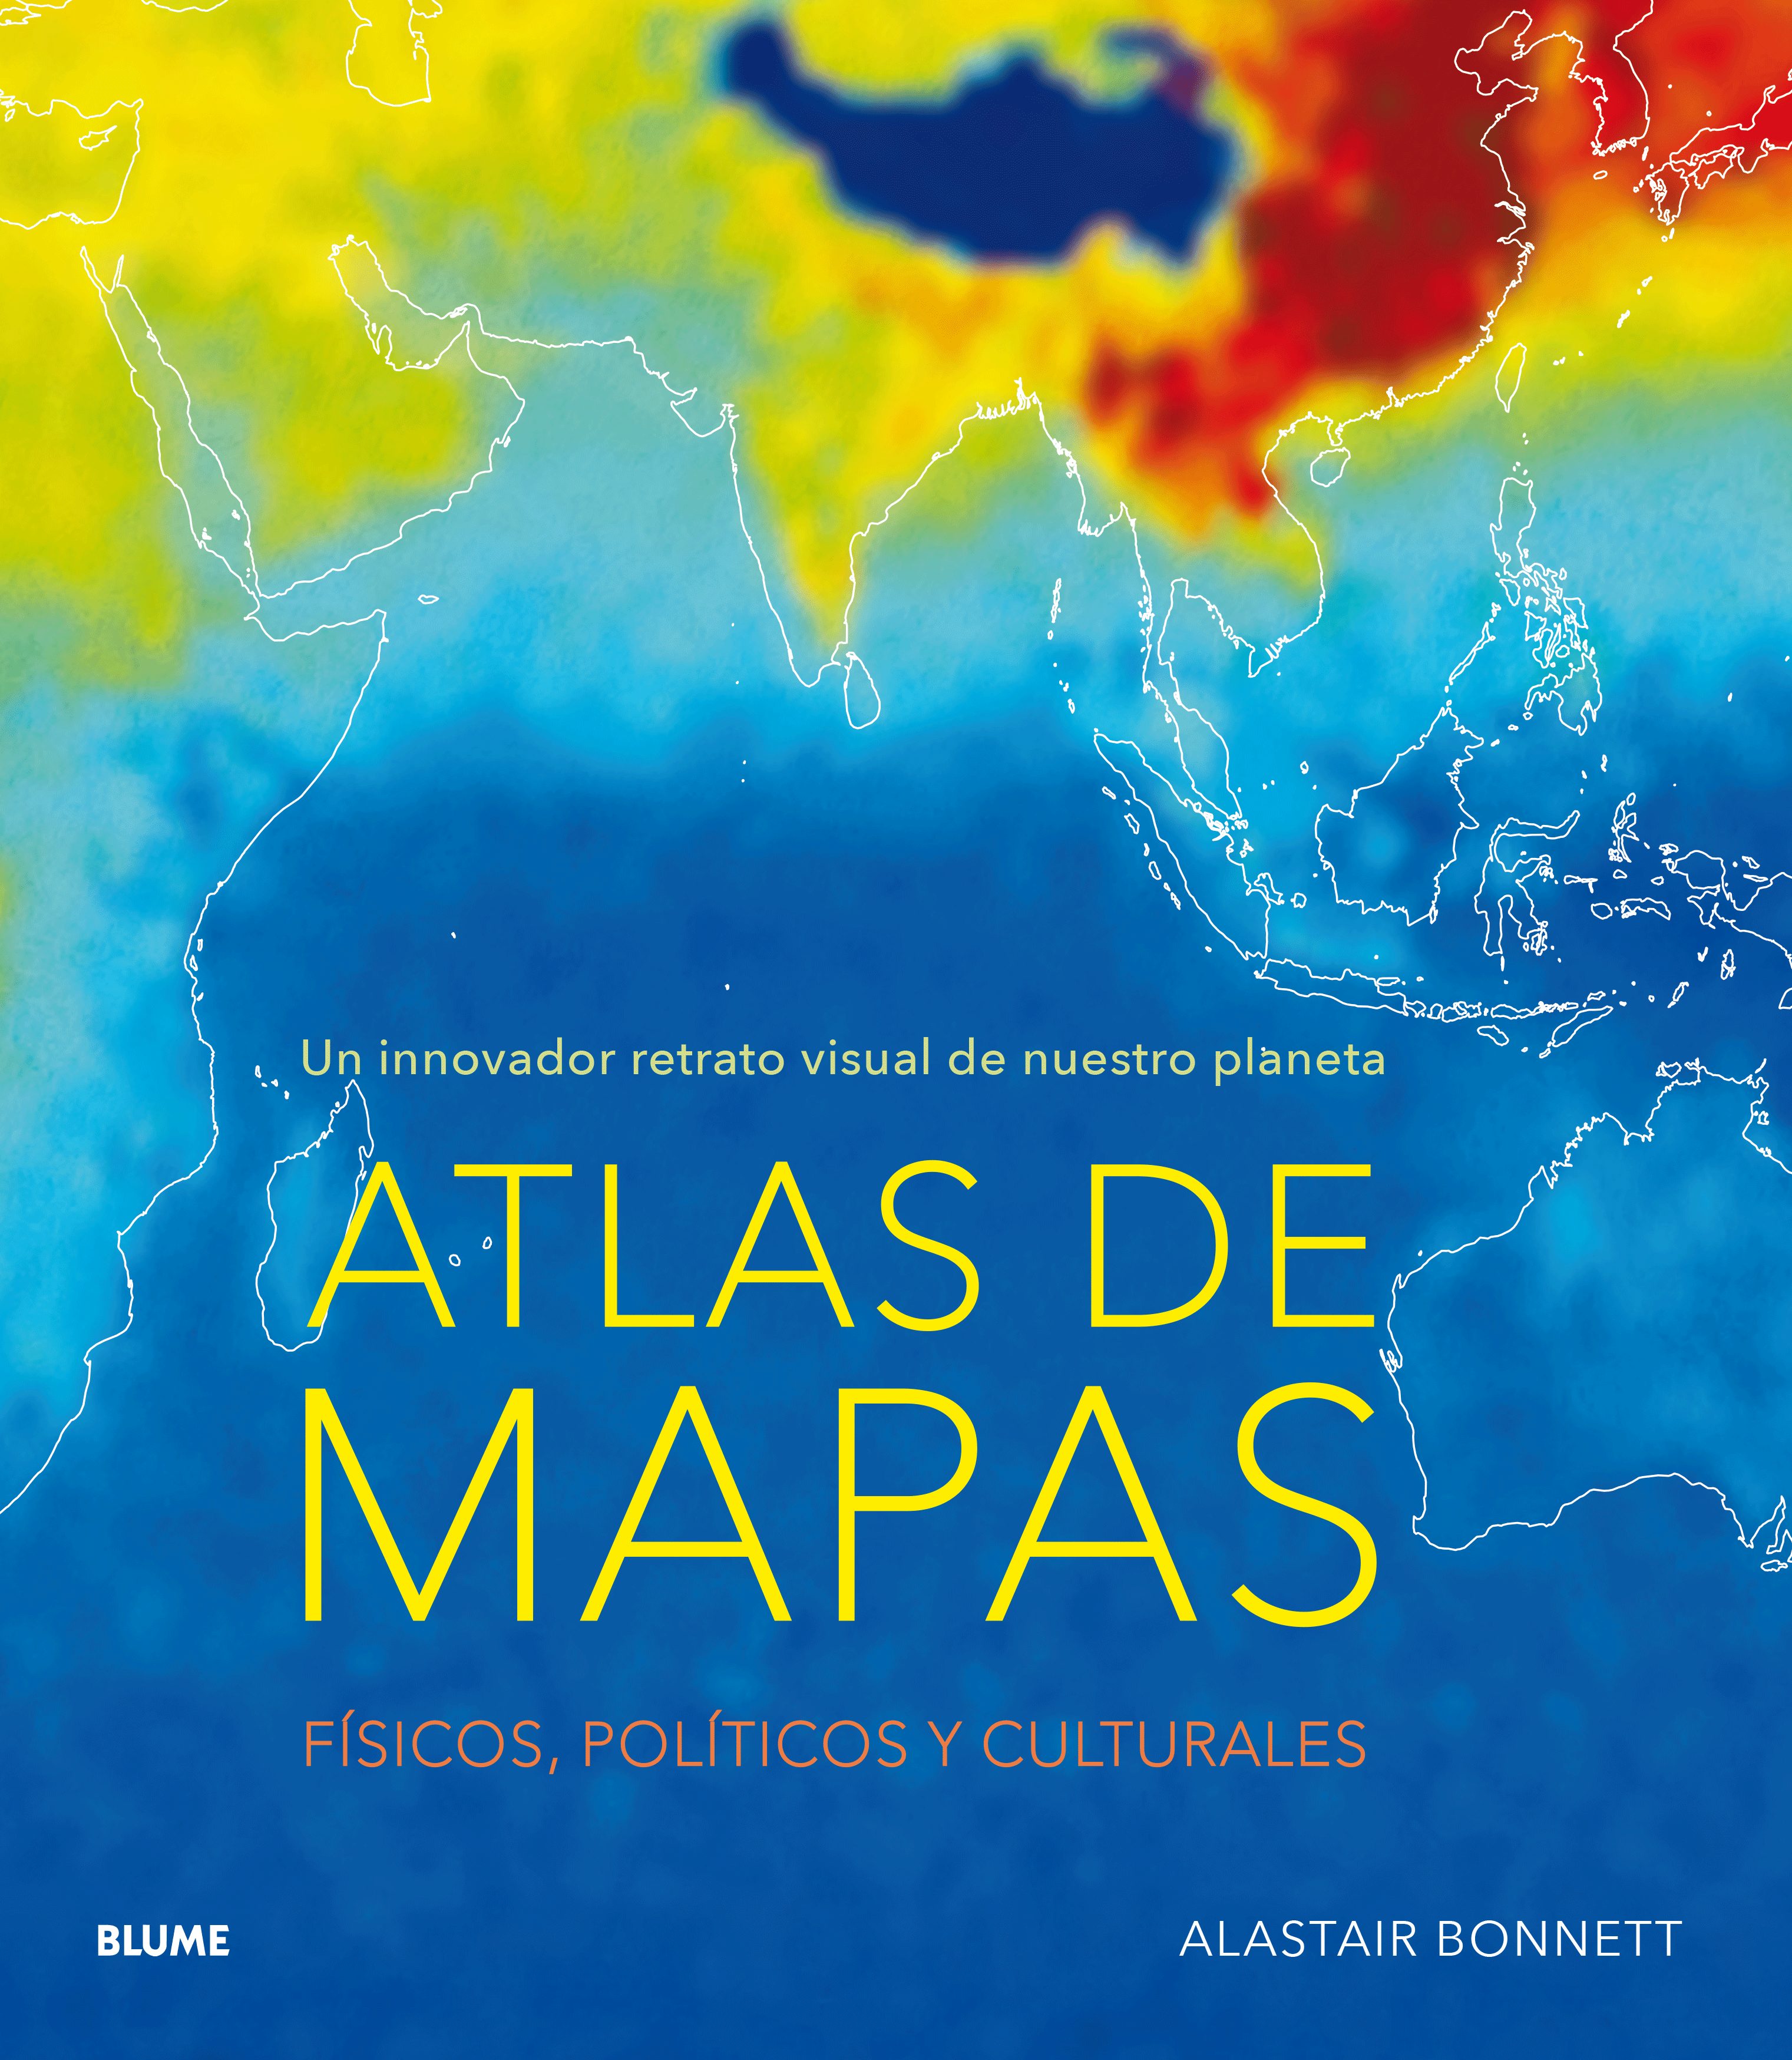 (pe) atlas de mapas: un innovador retrato visual de nuestro planeta: fisicos, politicos y culturales-alastair bonnett-9788416965793